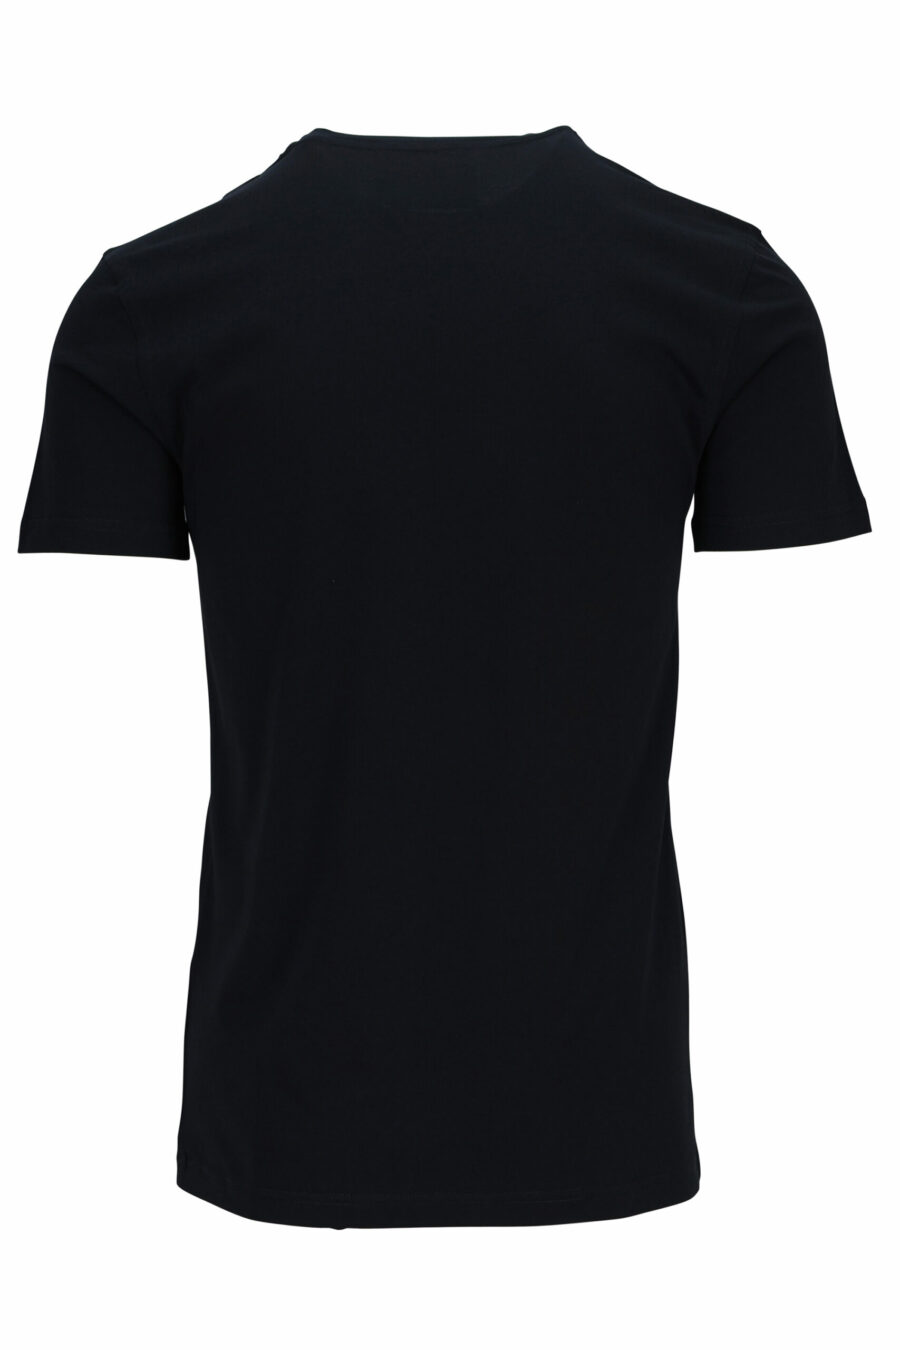 T-Shirt schwarz mit "teddy" Schneiderei maxilogo - 667113108032 1 1 skaliert